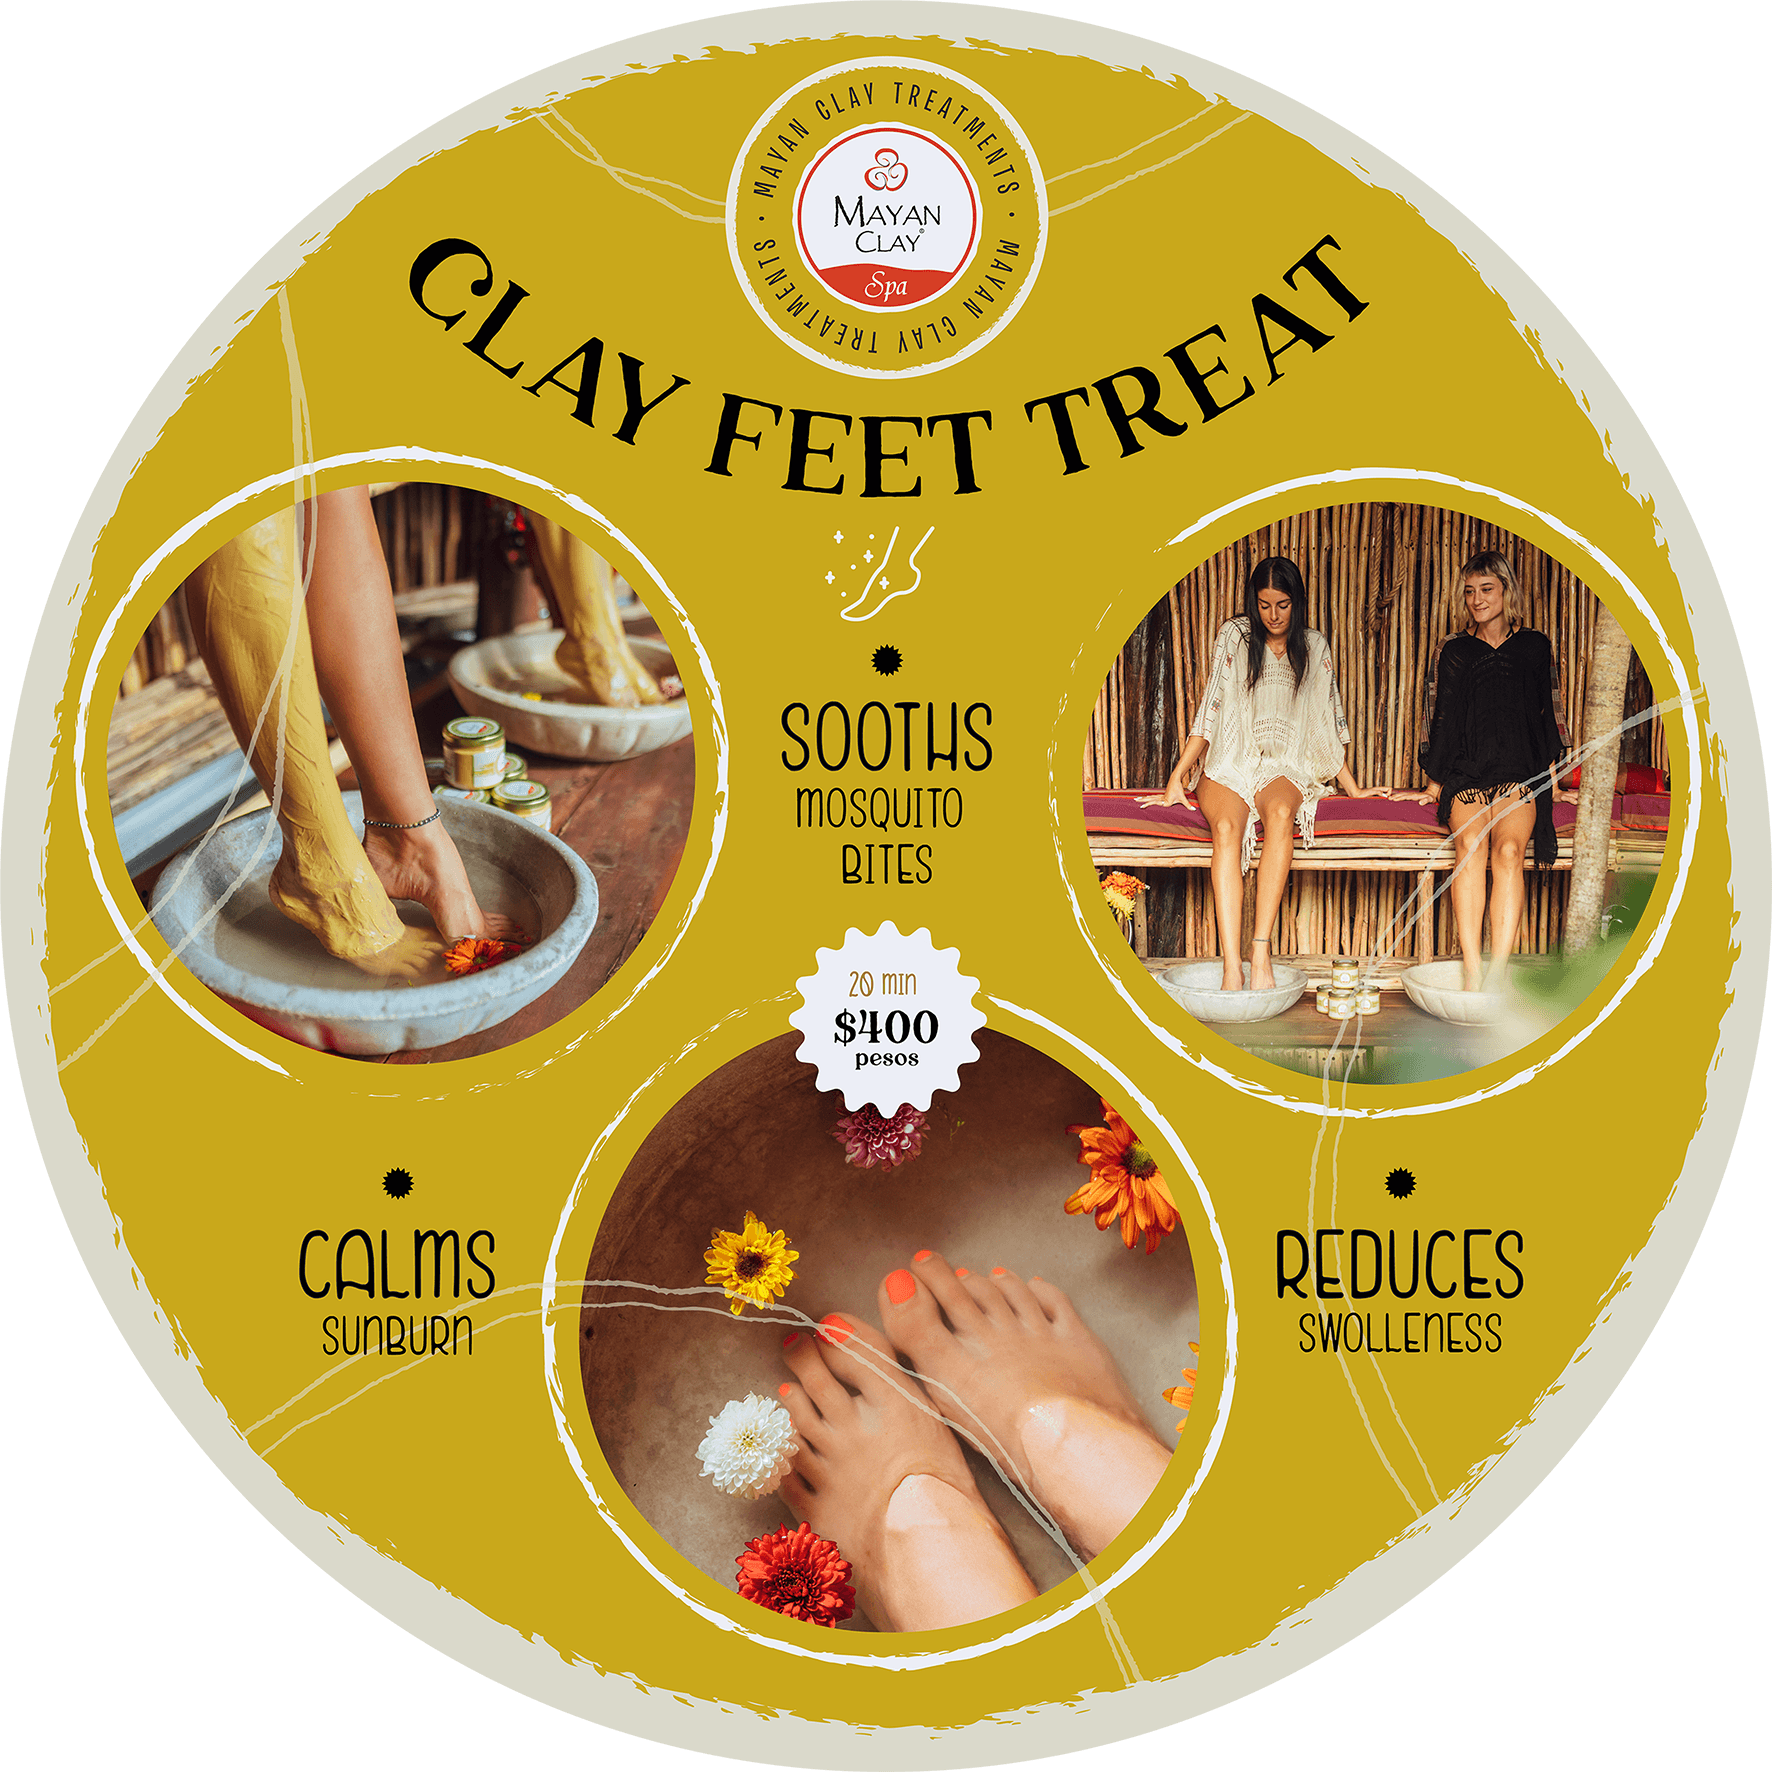 Mayan Clay Spa - Feet Treatments